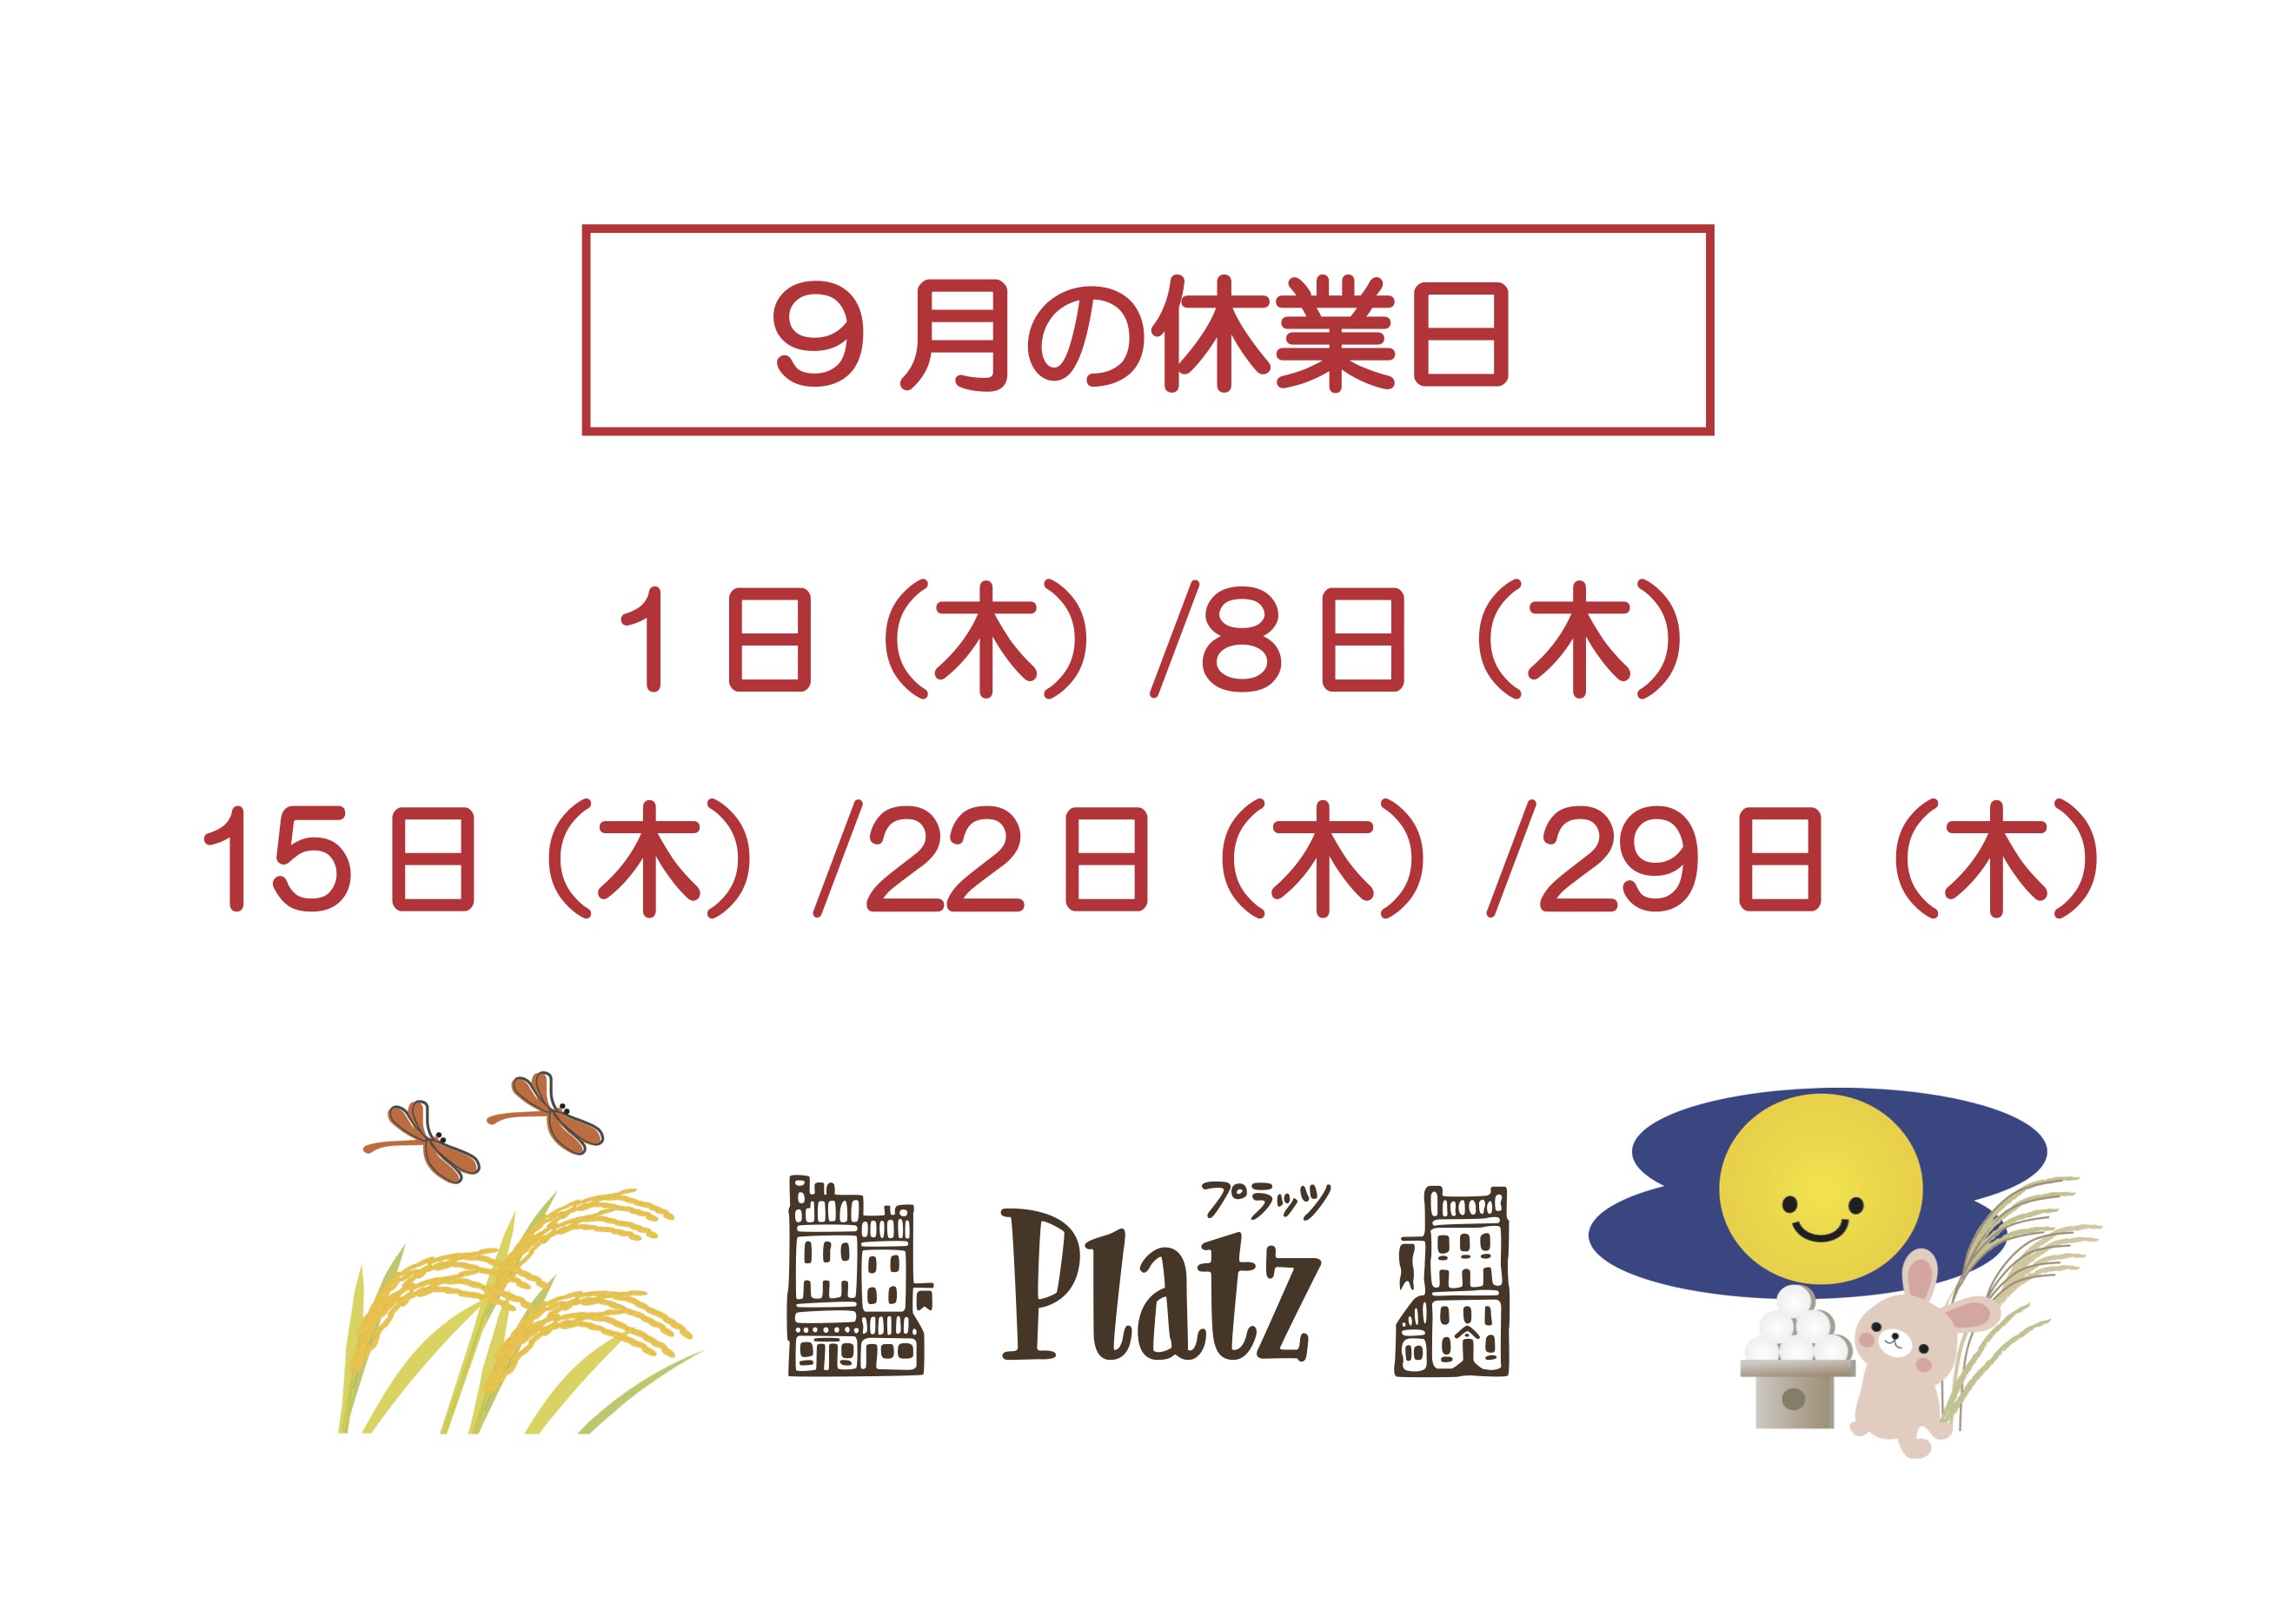 http://www.kyoto-platz.jp/news/images/2022.9%E6%9C%88%E4%BC%91%E6%A5%AD%E6%97%A5.jpg